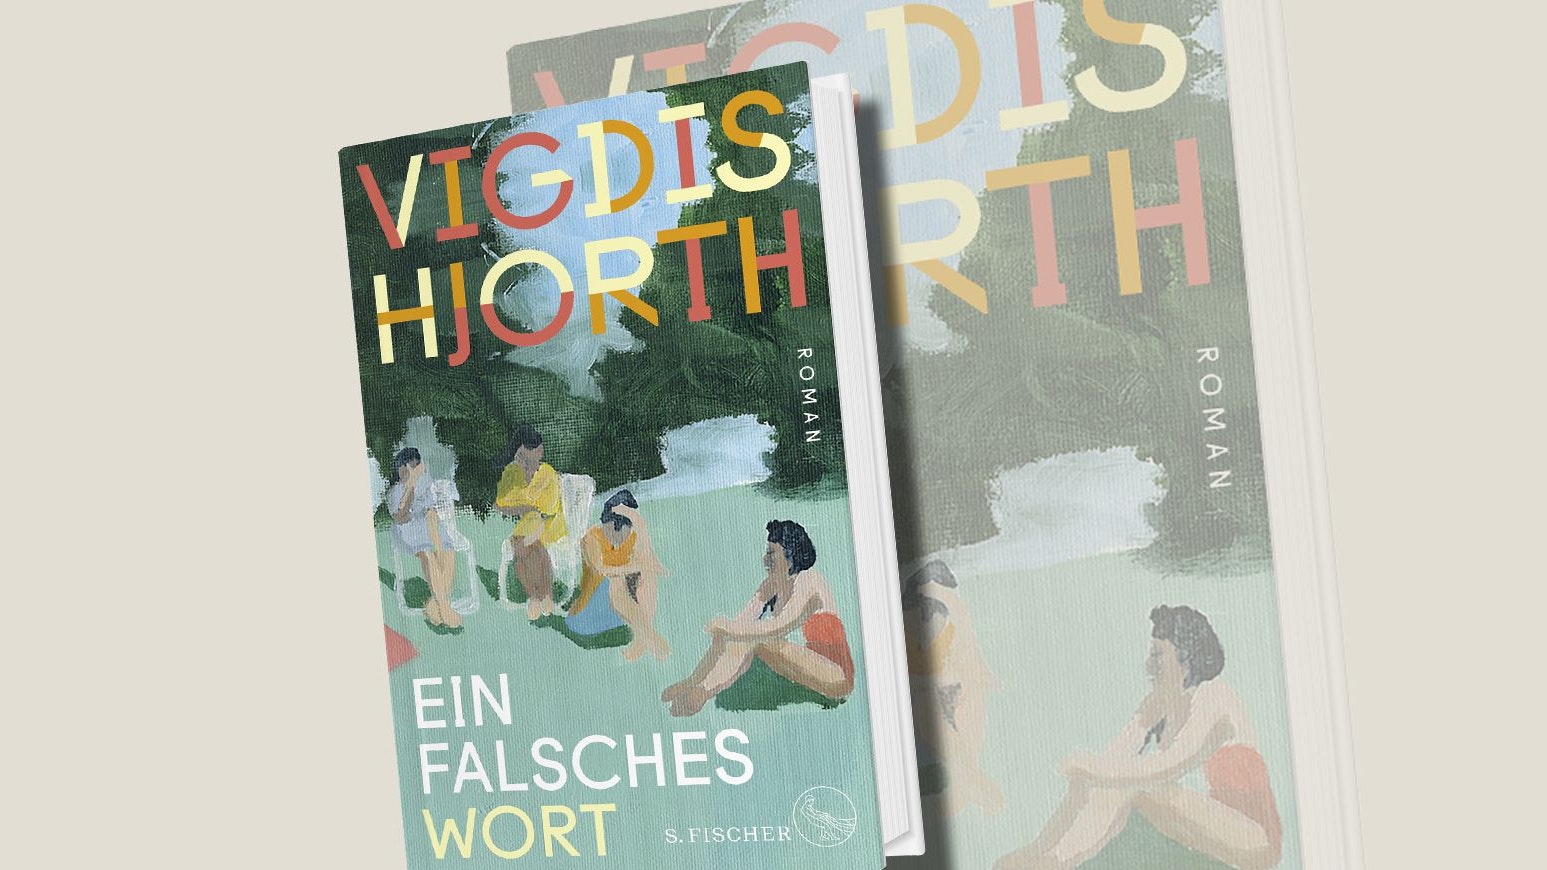 Vigdis Hjorth, "Ein falsches Wort", S. Fischer, 25 Euro